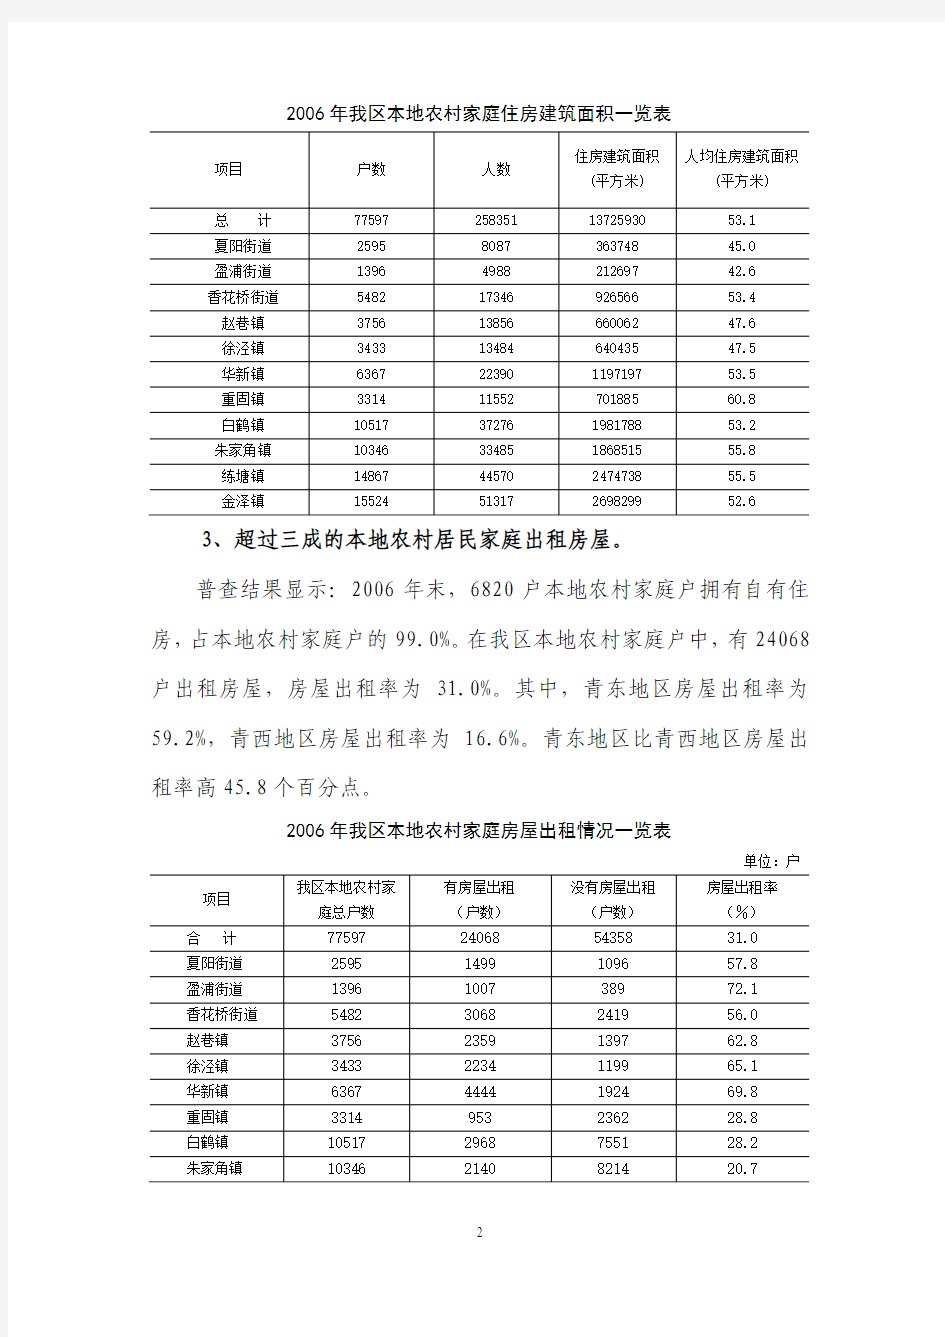 青浦区农村居民居住质状况分析报告1-3